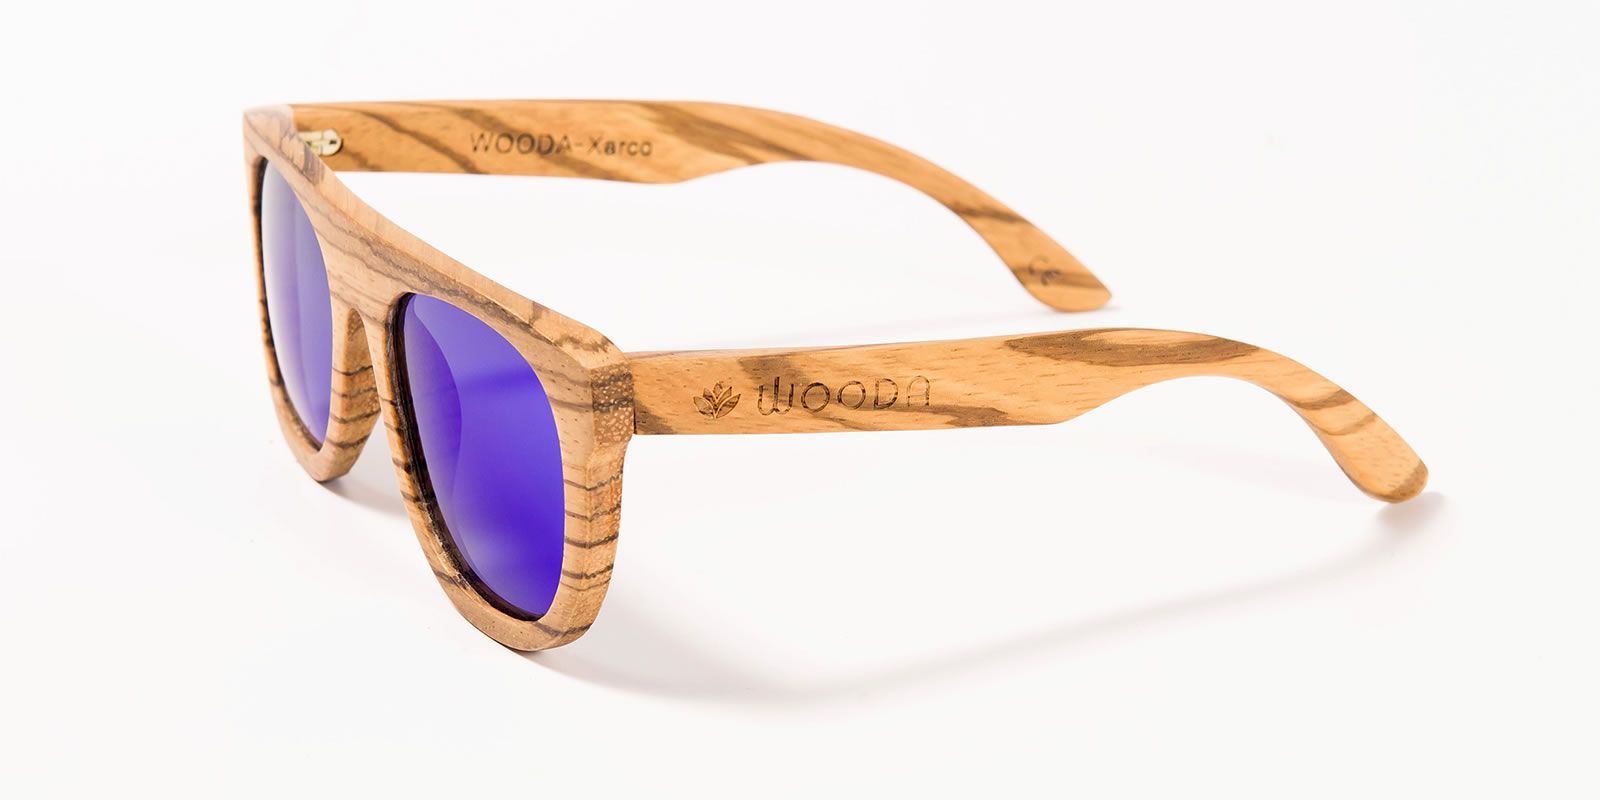 Share more than 167 revo sunglasses canada latest